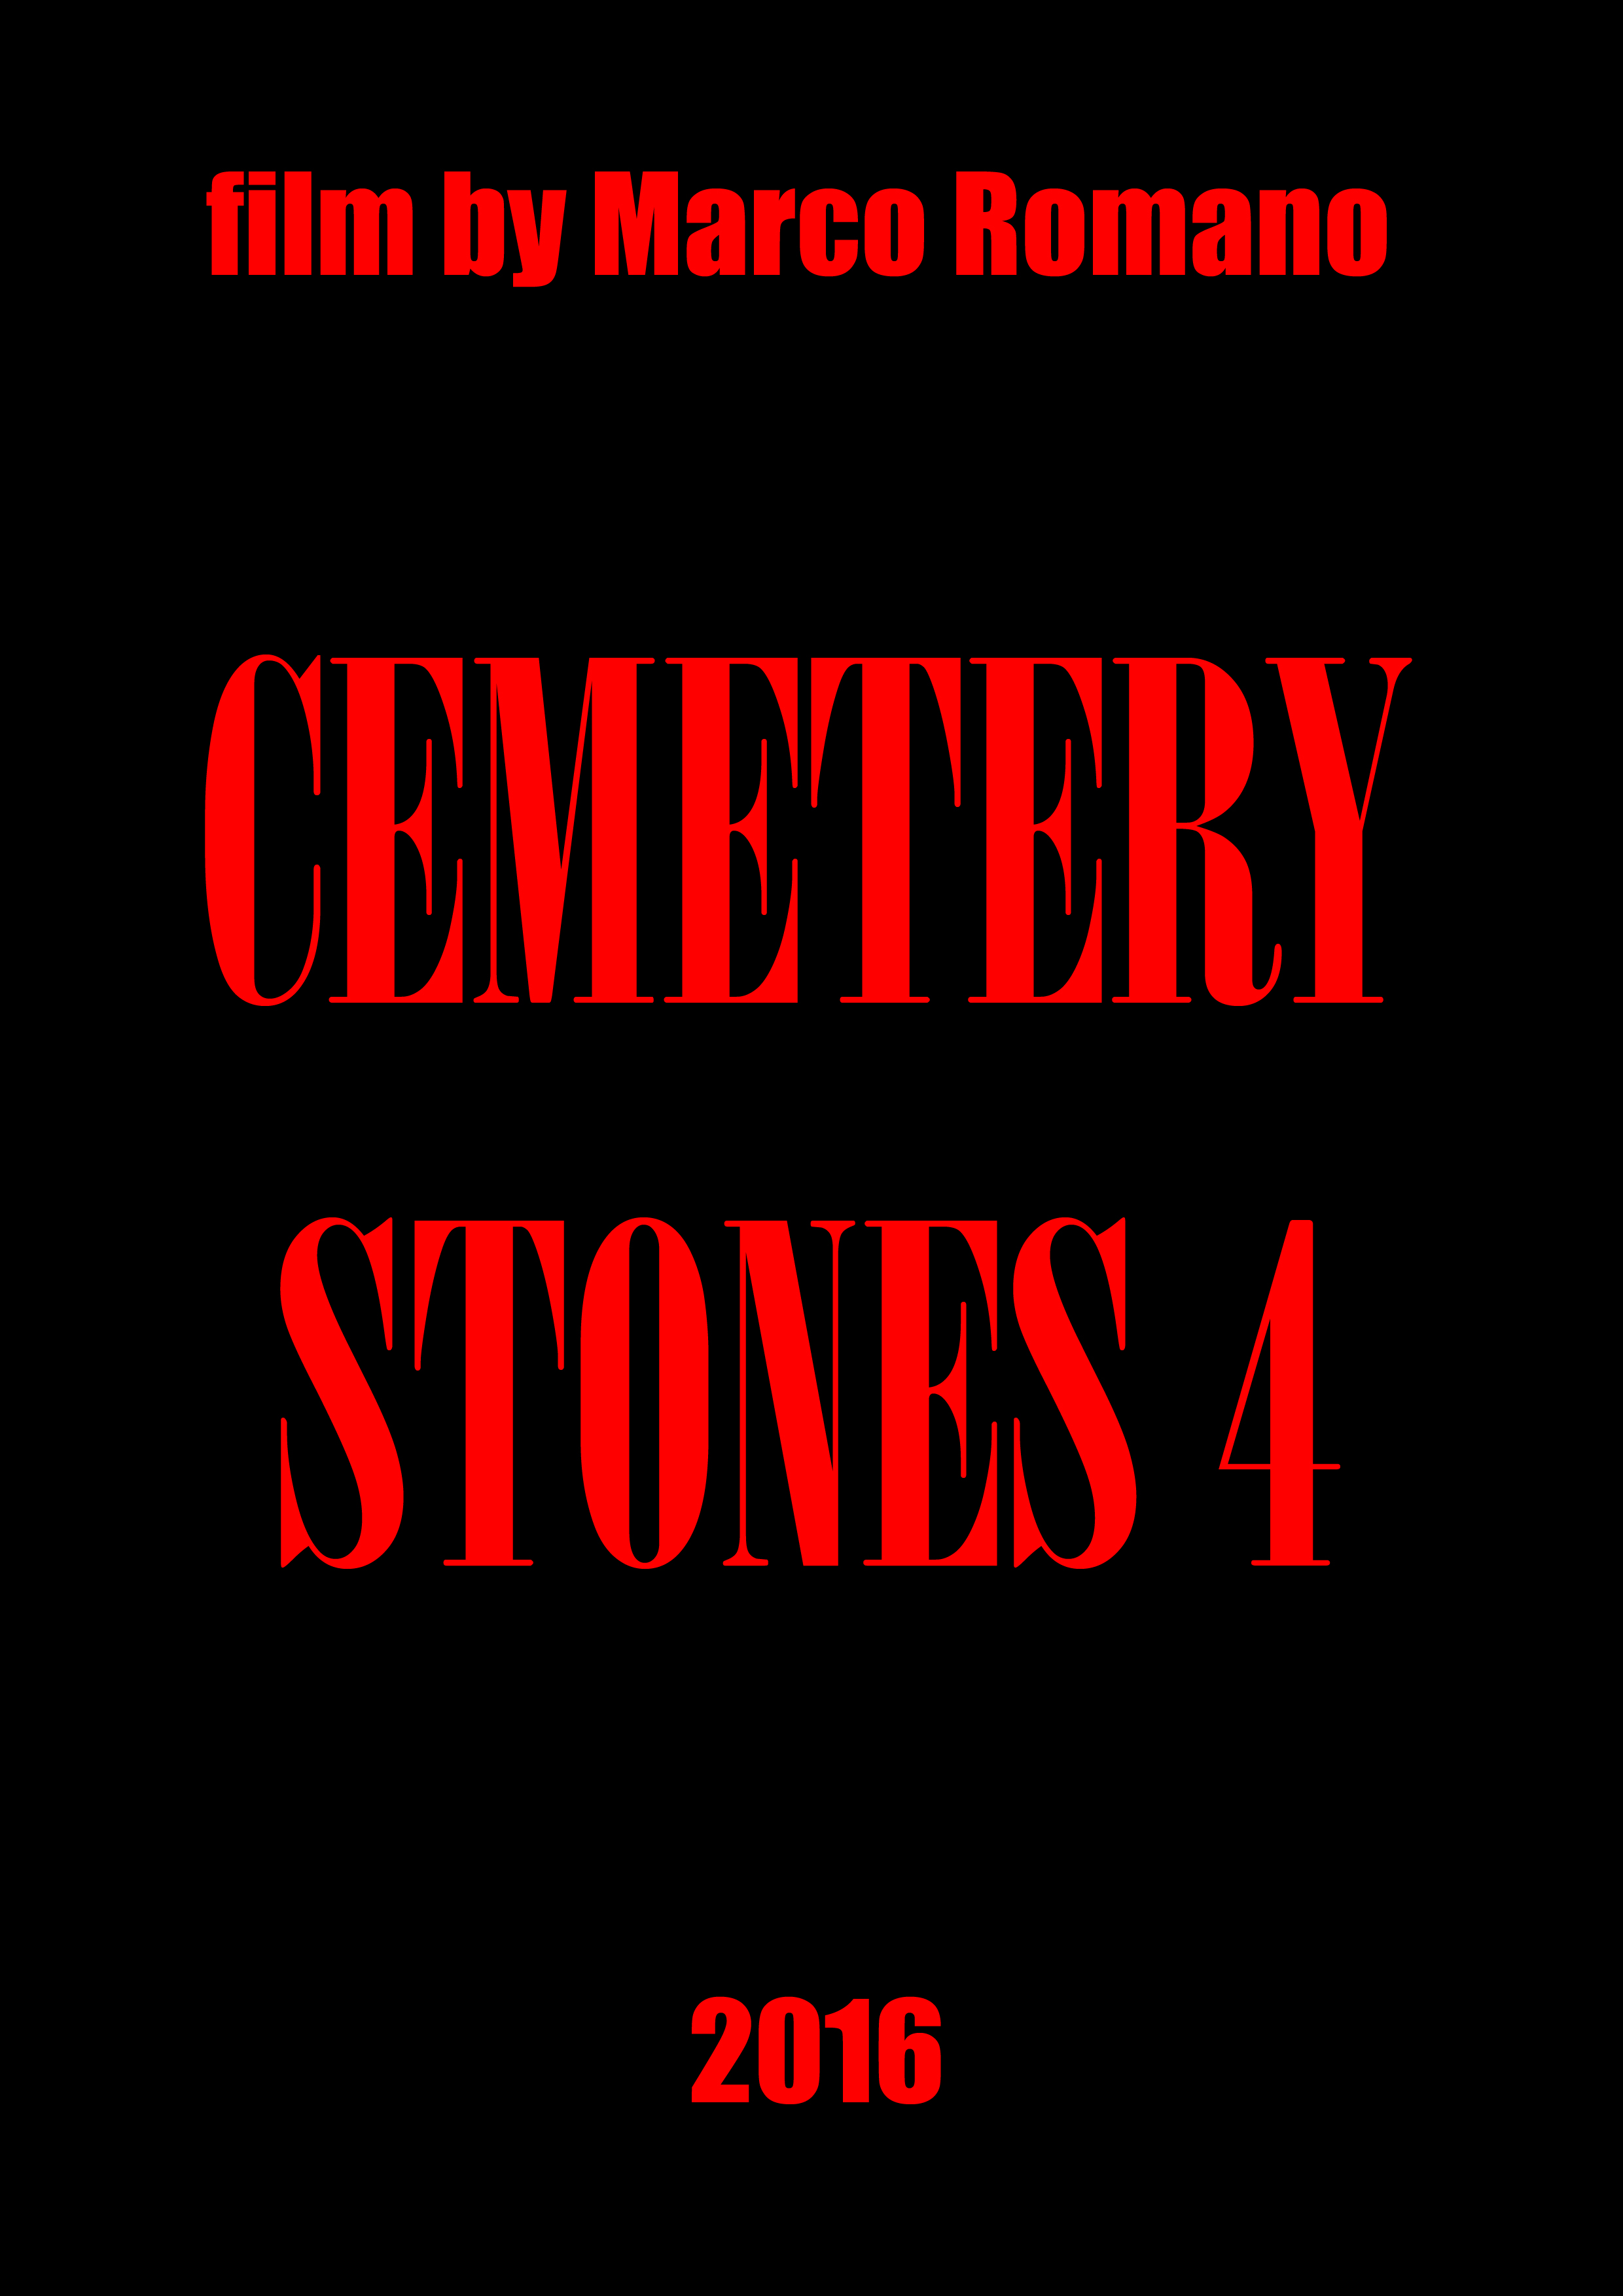 Cemetery Stones 4 (2016)